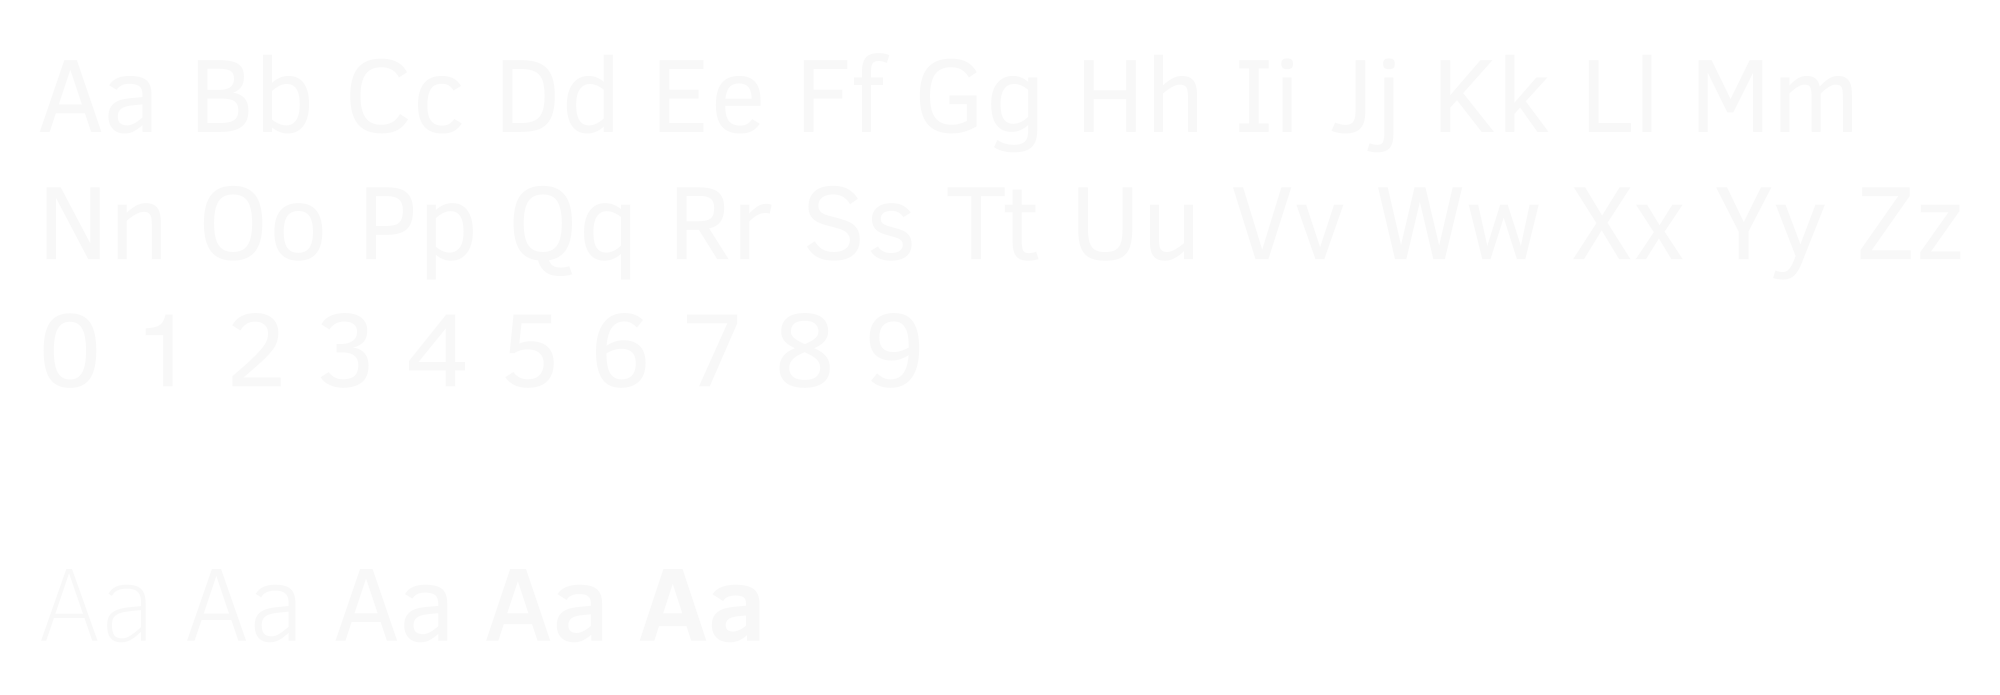 Clear Sans Typeface